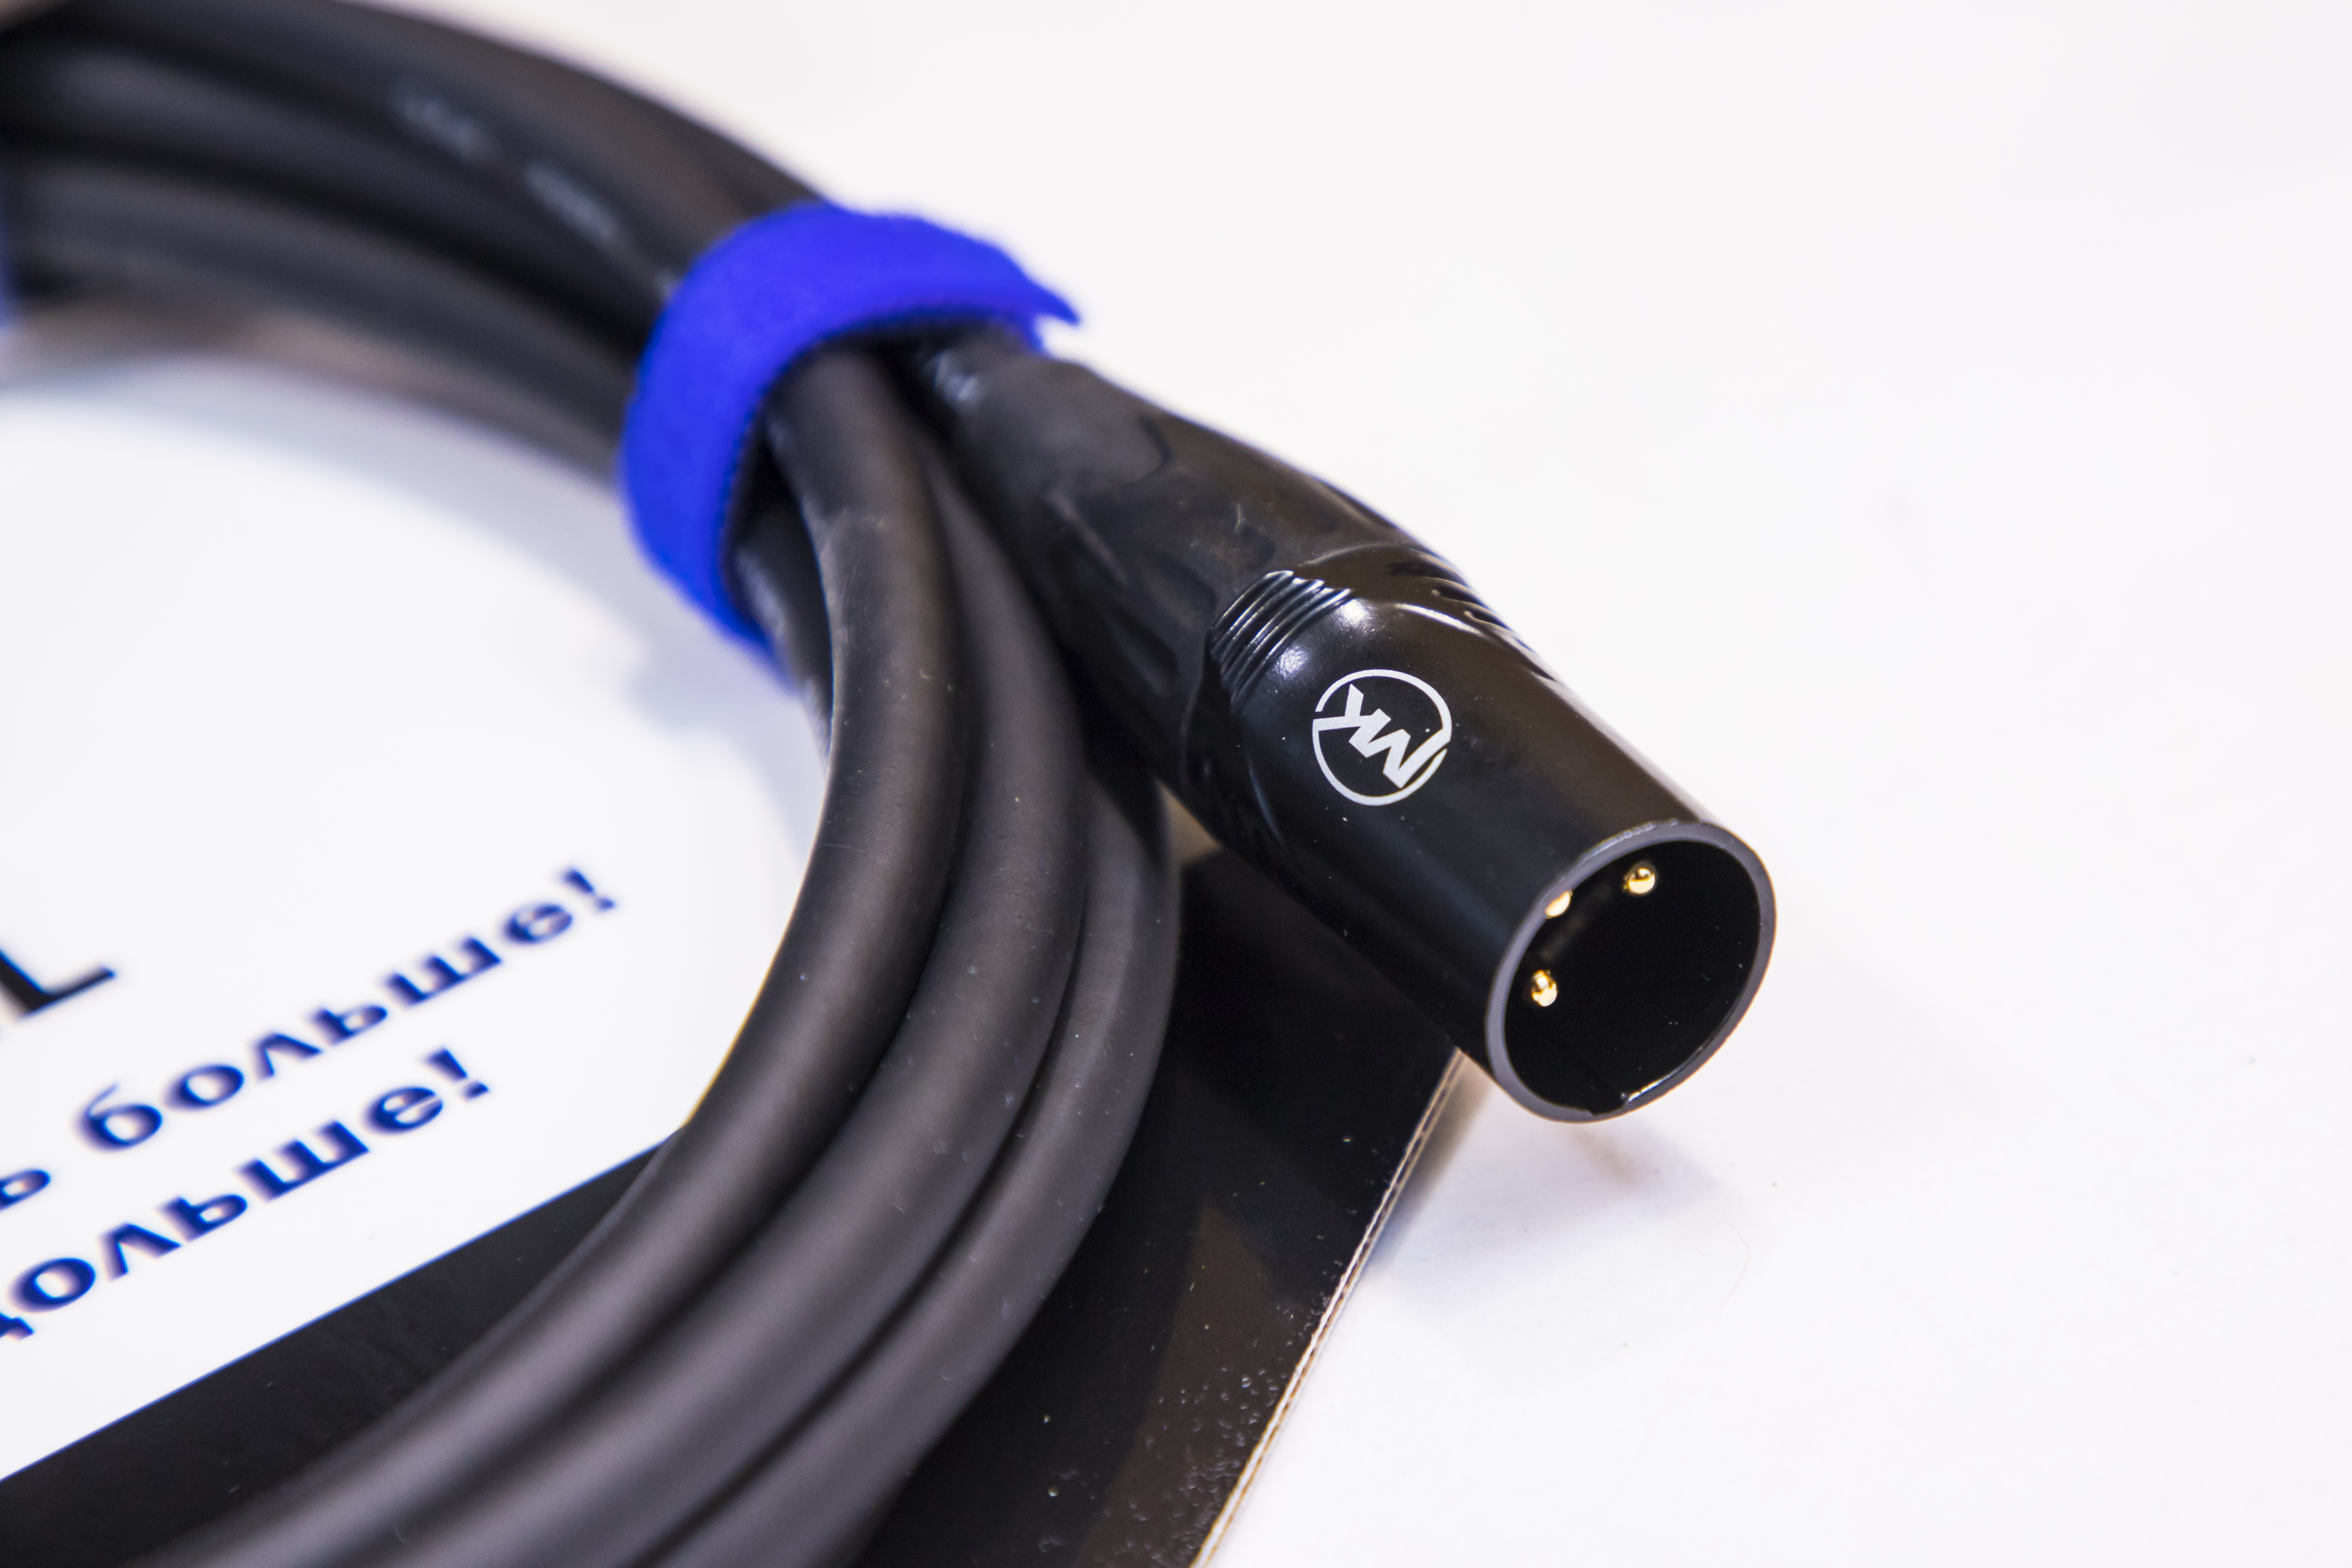 Микрофонный кабель MUZKABEL XXFMK1B - 4,5 метра, XLR – XLR